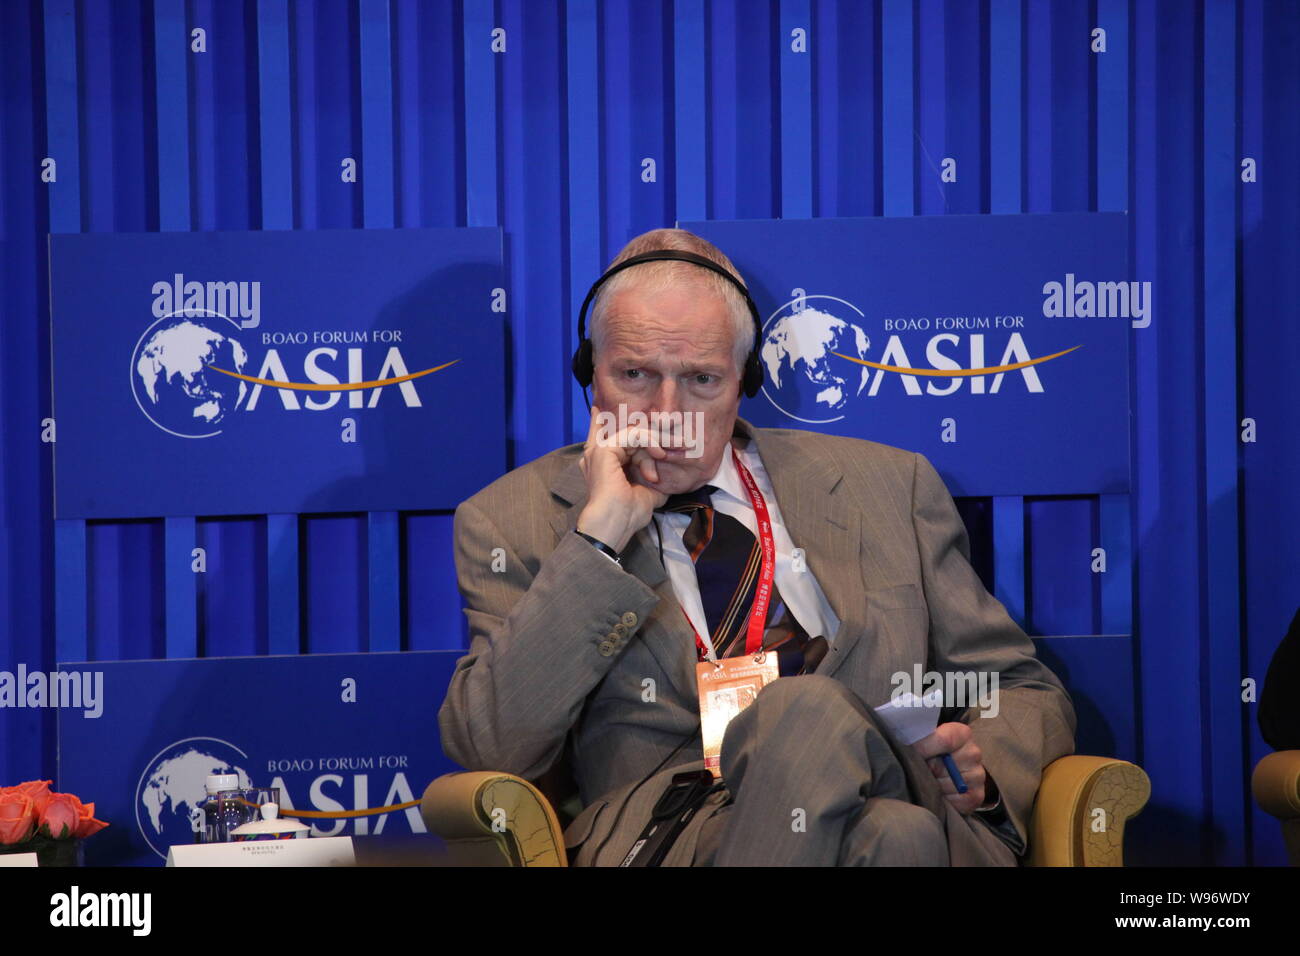 Edmund Strother Phelps, economista americano y el ganador del Premio Nobel de 2006 Memorial en Ciencias Económicas, es fotografiado durante el Foro de Boao para Foto de stock